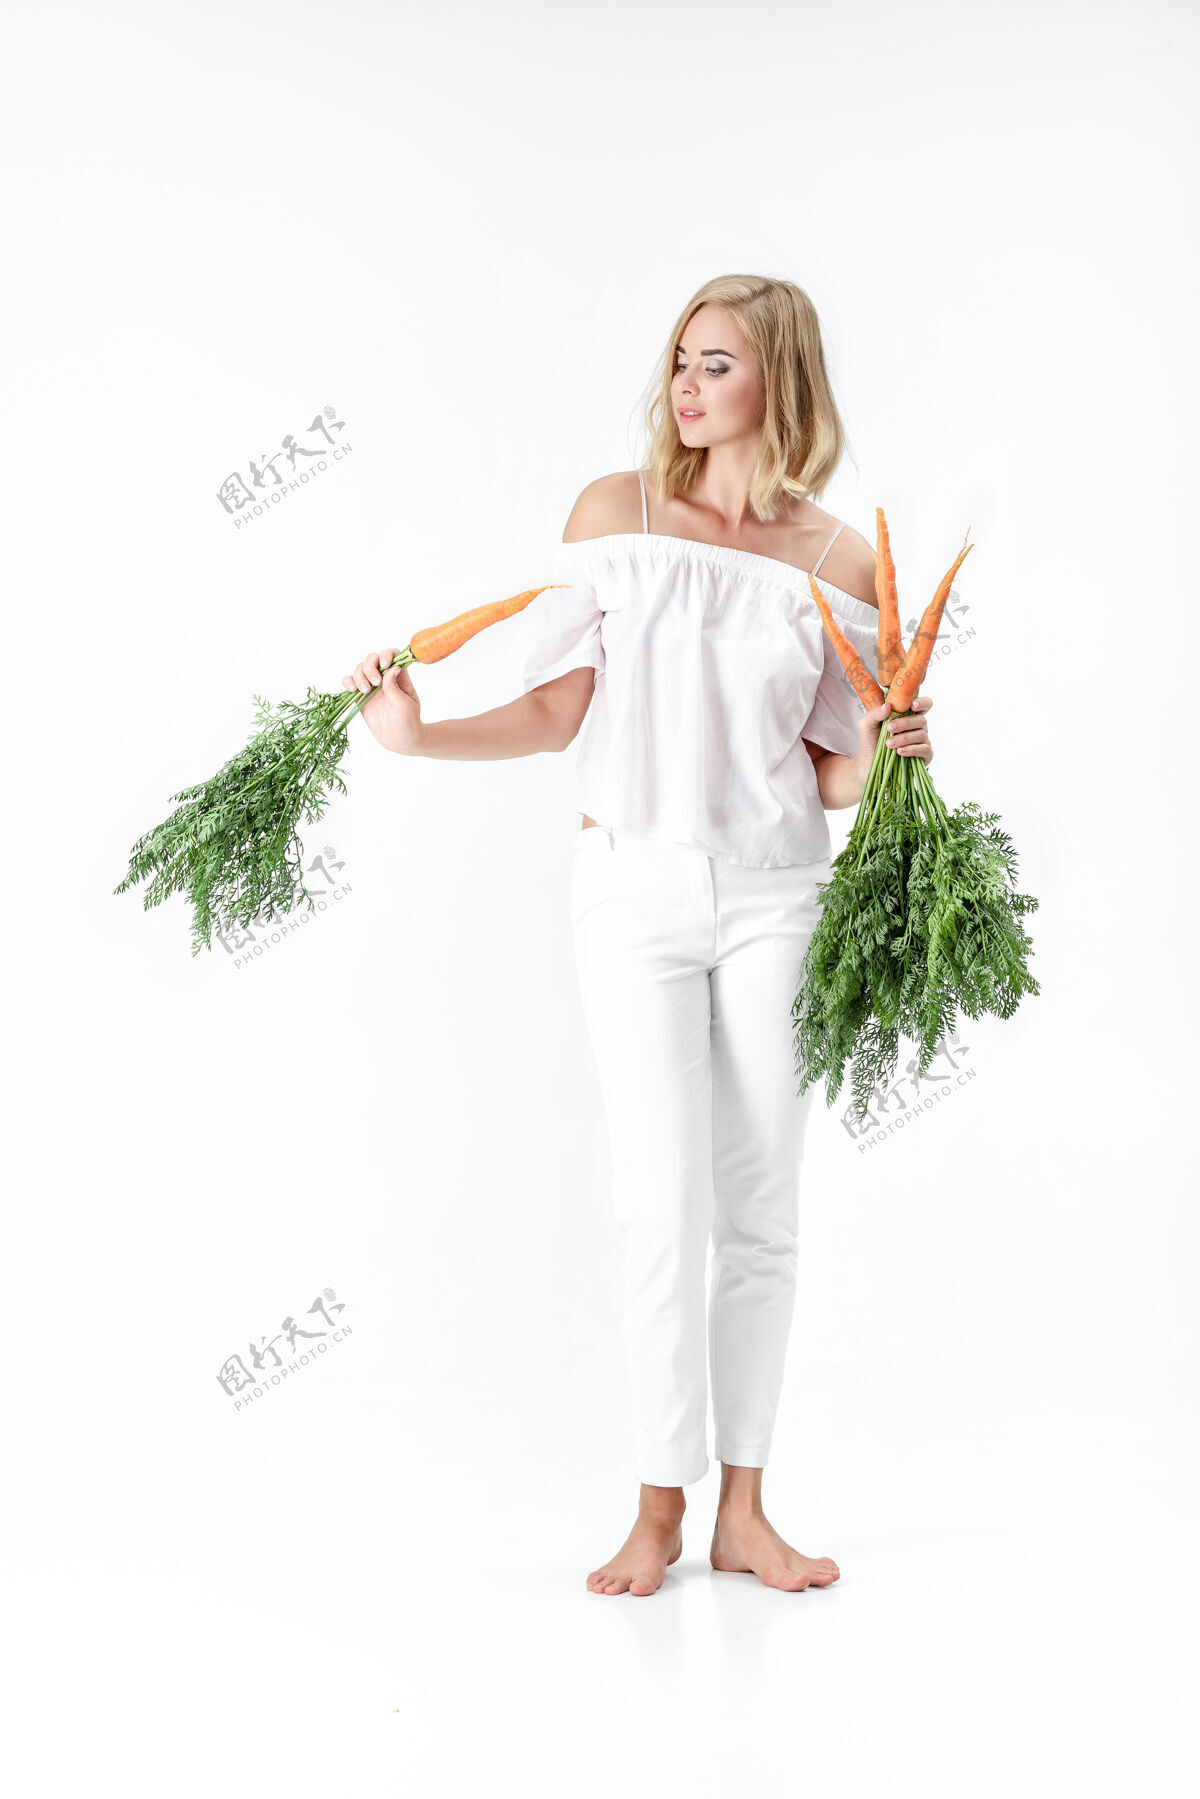 束一个穿着白衬衫的金发美女 手里拿着一根新鲜的胡萝卜 上面有绿叶背景.健康还有节食素食生活方式膳食